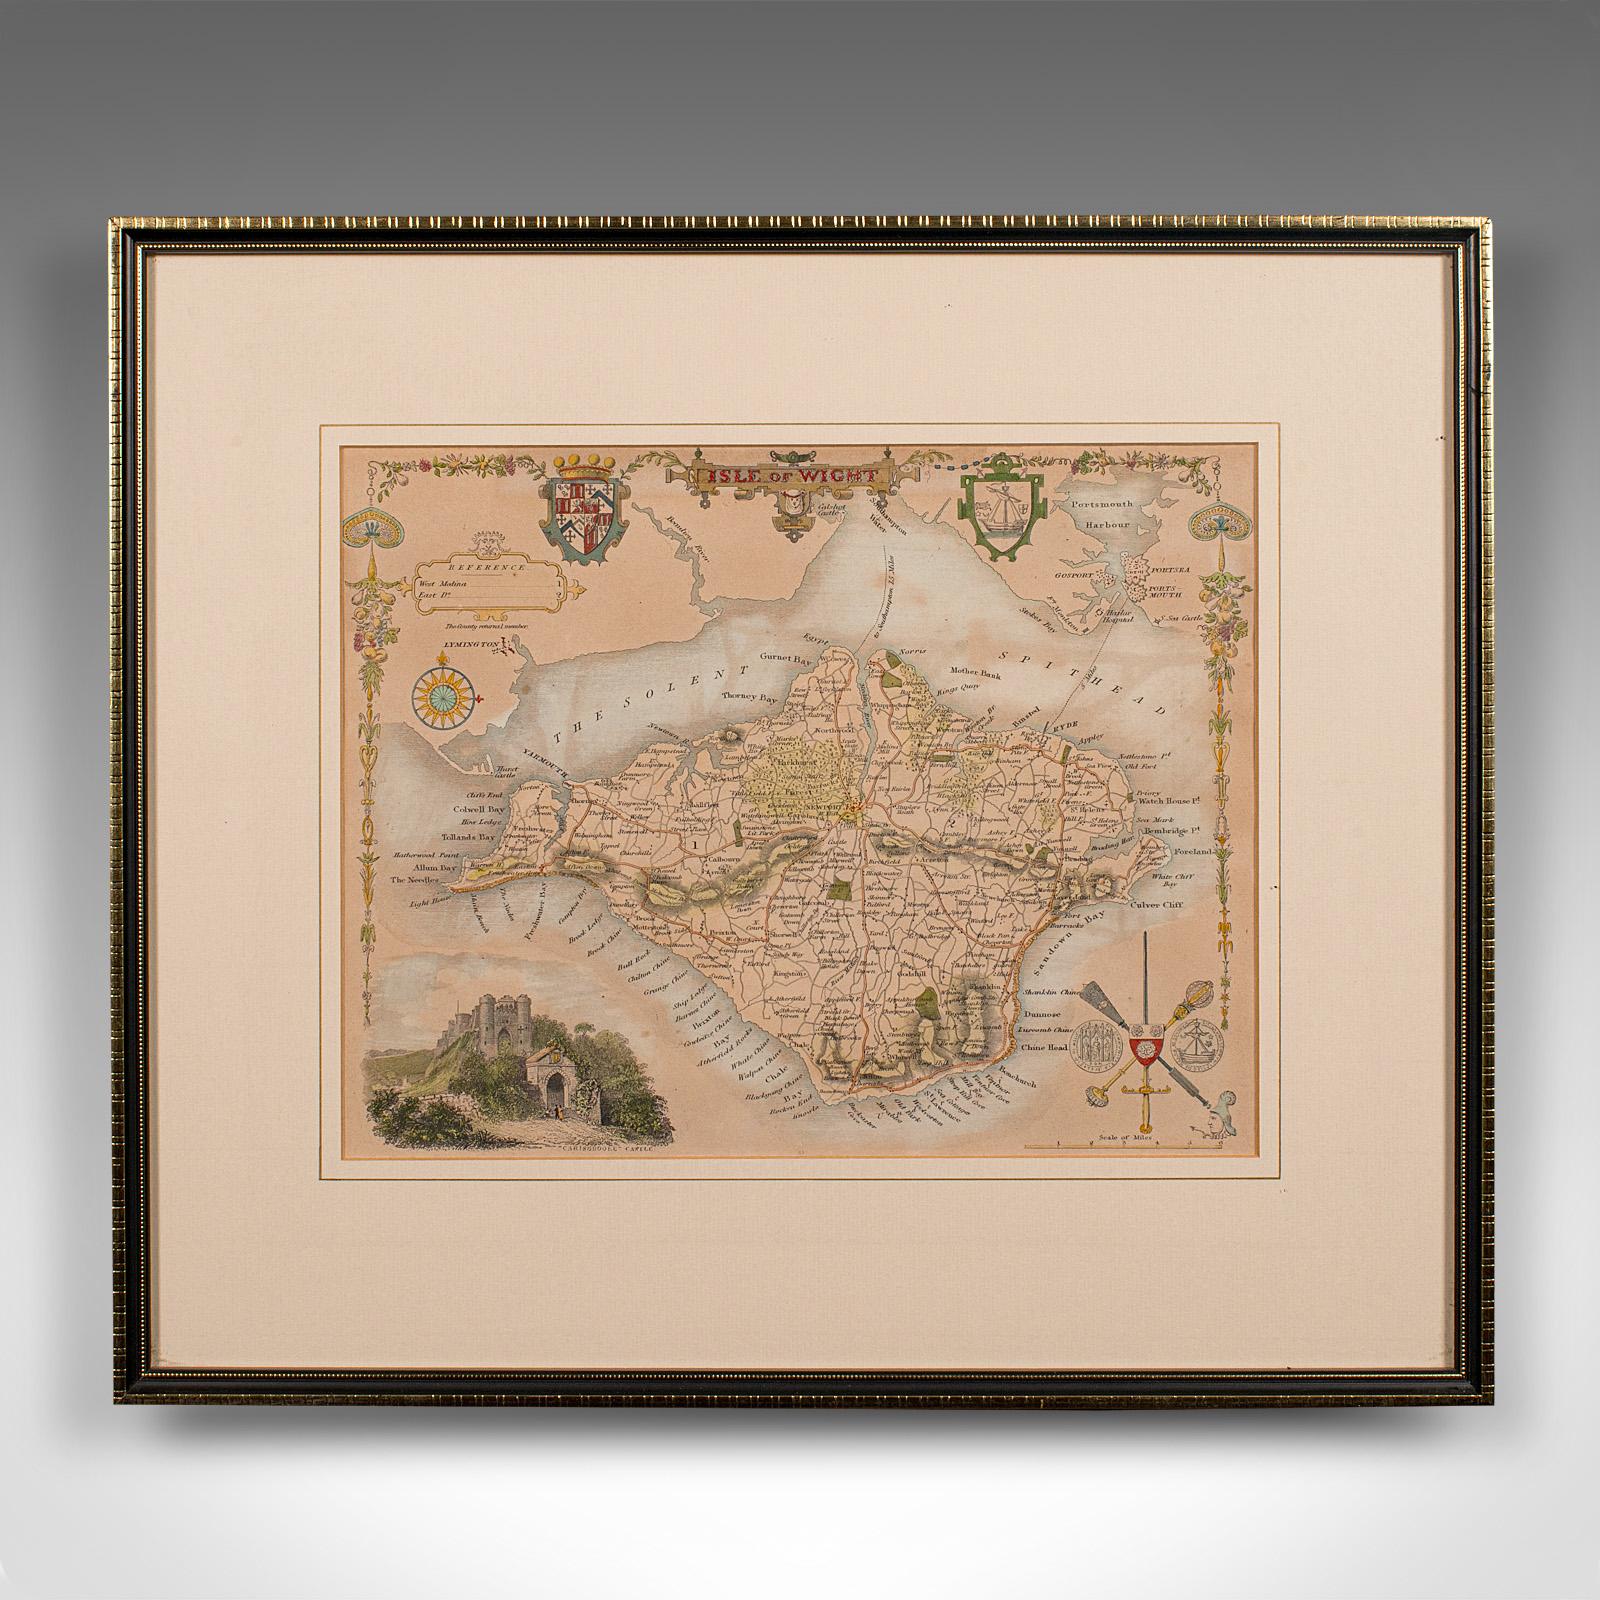 Il s'agit d'une carte lithographique ancienne de l'île de Wight. Gravure d'atlas anglaise encadrée, d'intérêt cartographique, datant du début du XIXe siècle ou plus tard.

Superbe lithographie de l'île et de son comté, parfaite pour